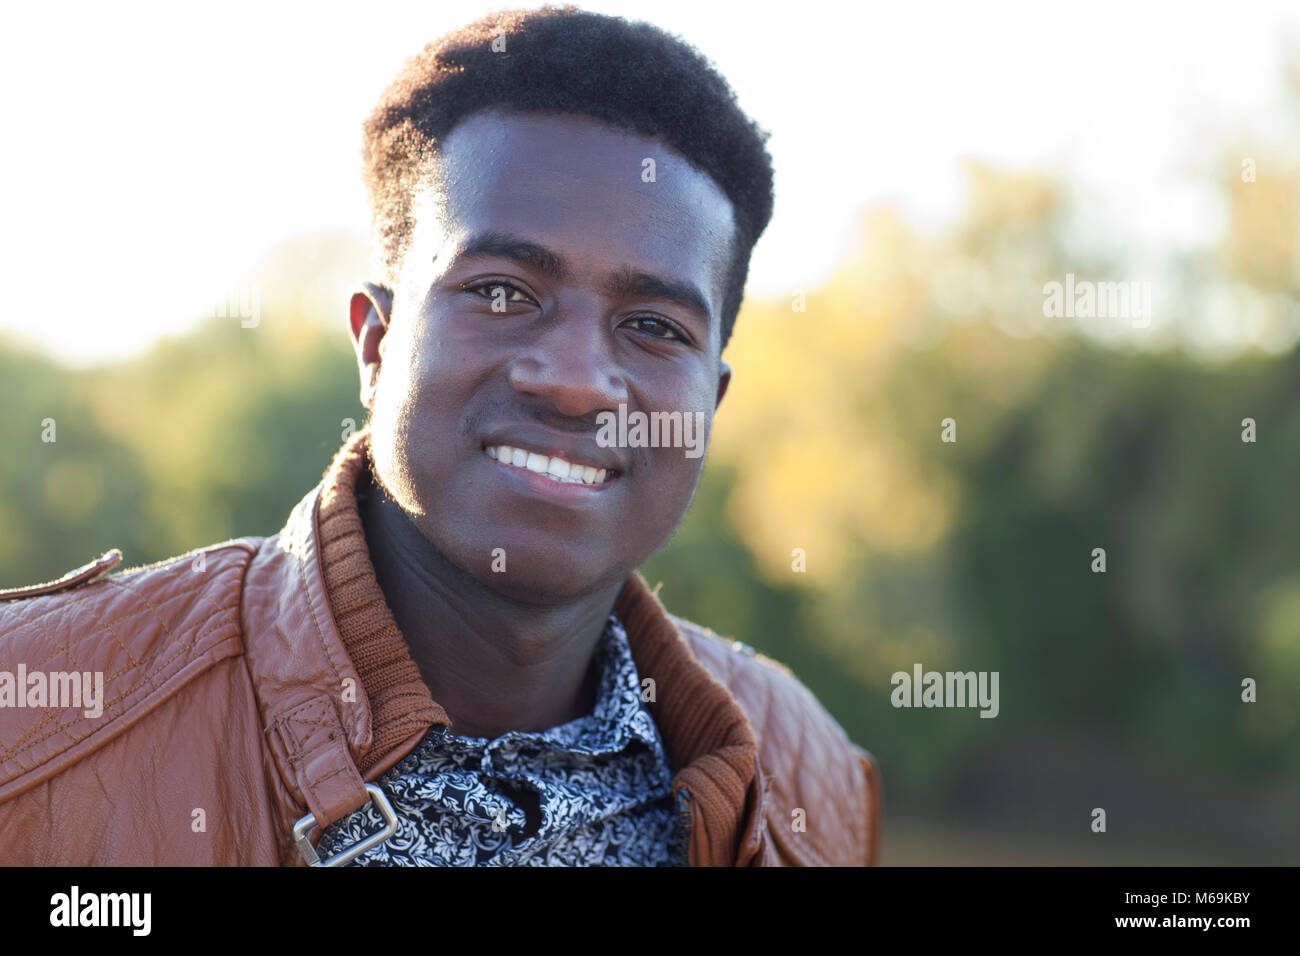 Apuesto joven negro sonriendo delante del efecto de desenfoque de fondo Foto de stock